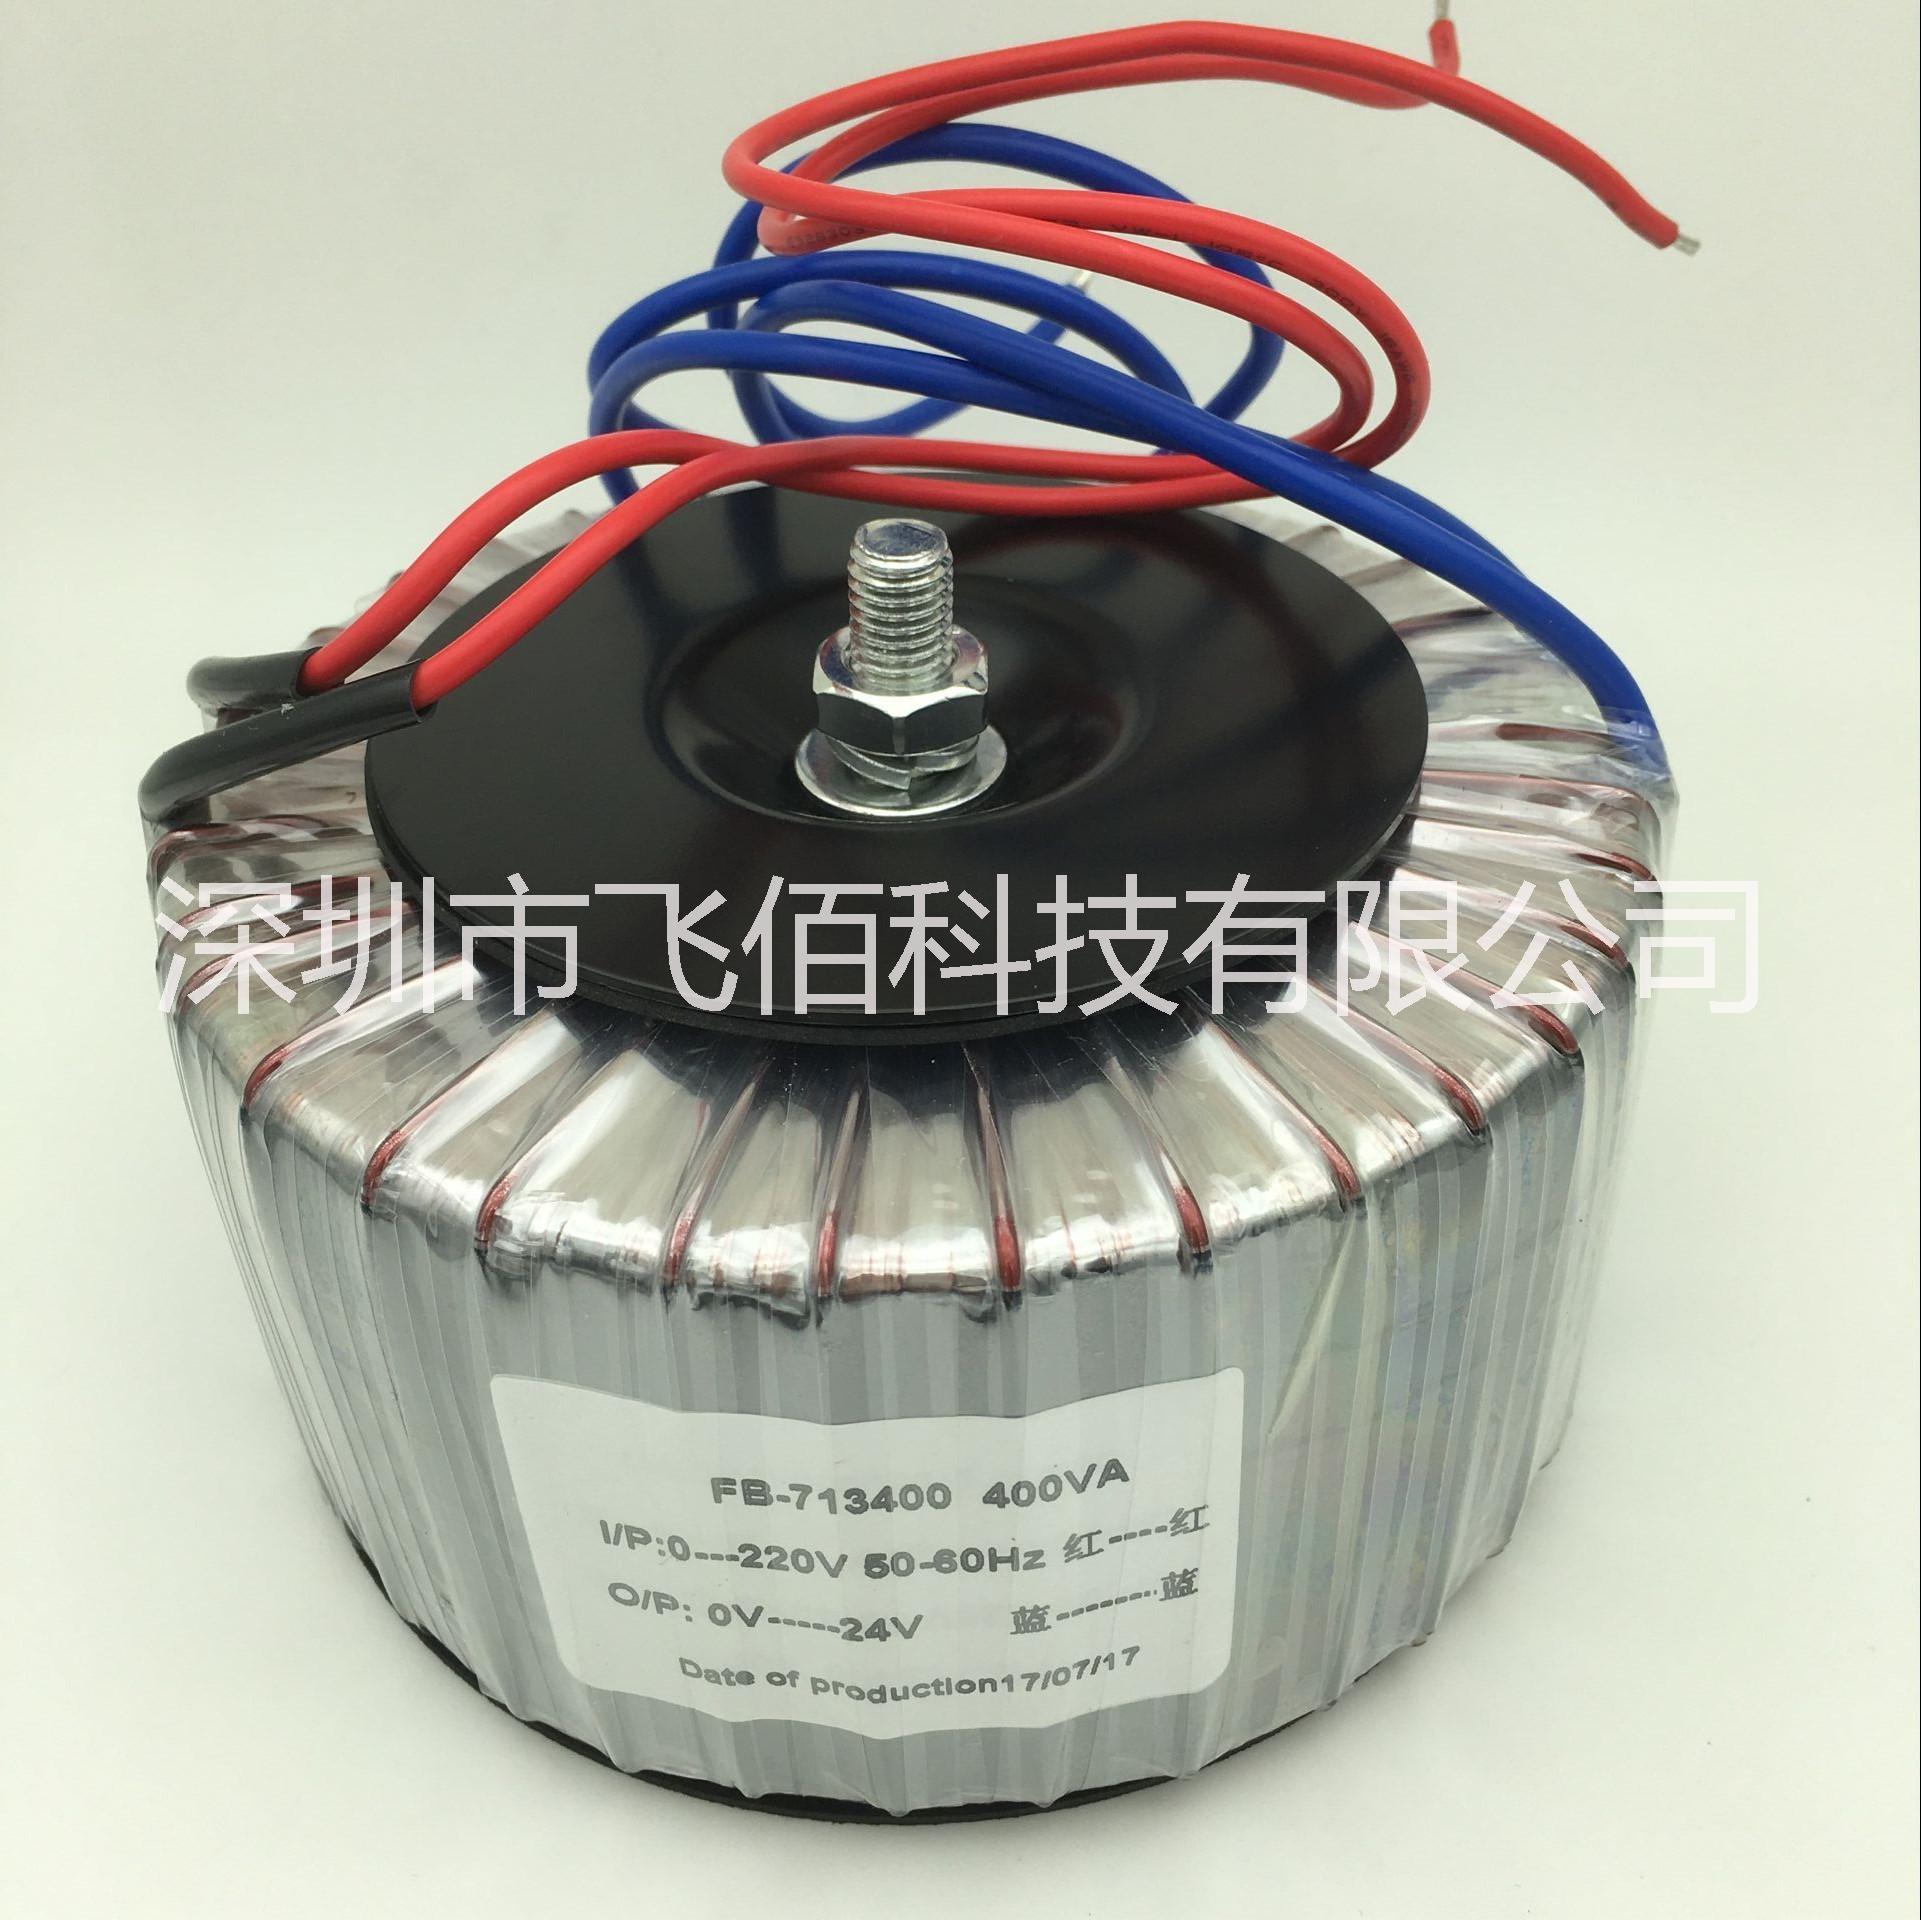 深圳生产厂家 大量生产 隔离环形变压器400VA 功率尺寸均可定制